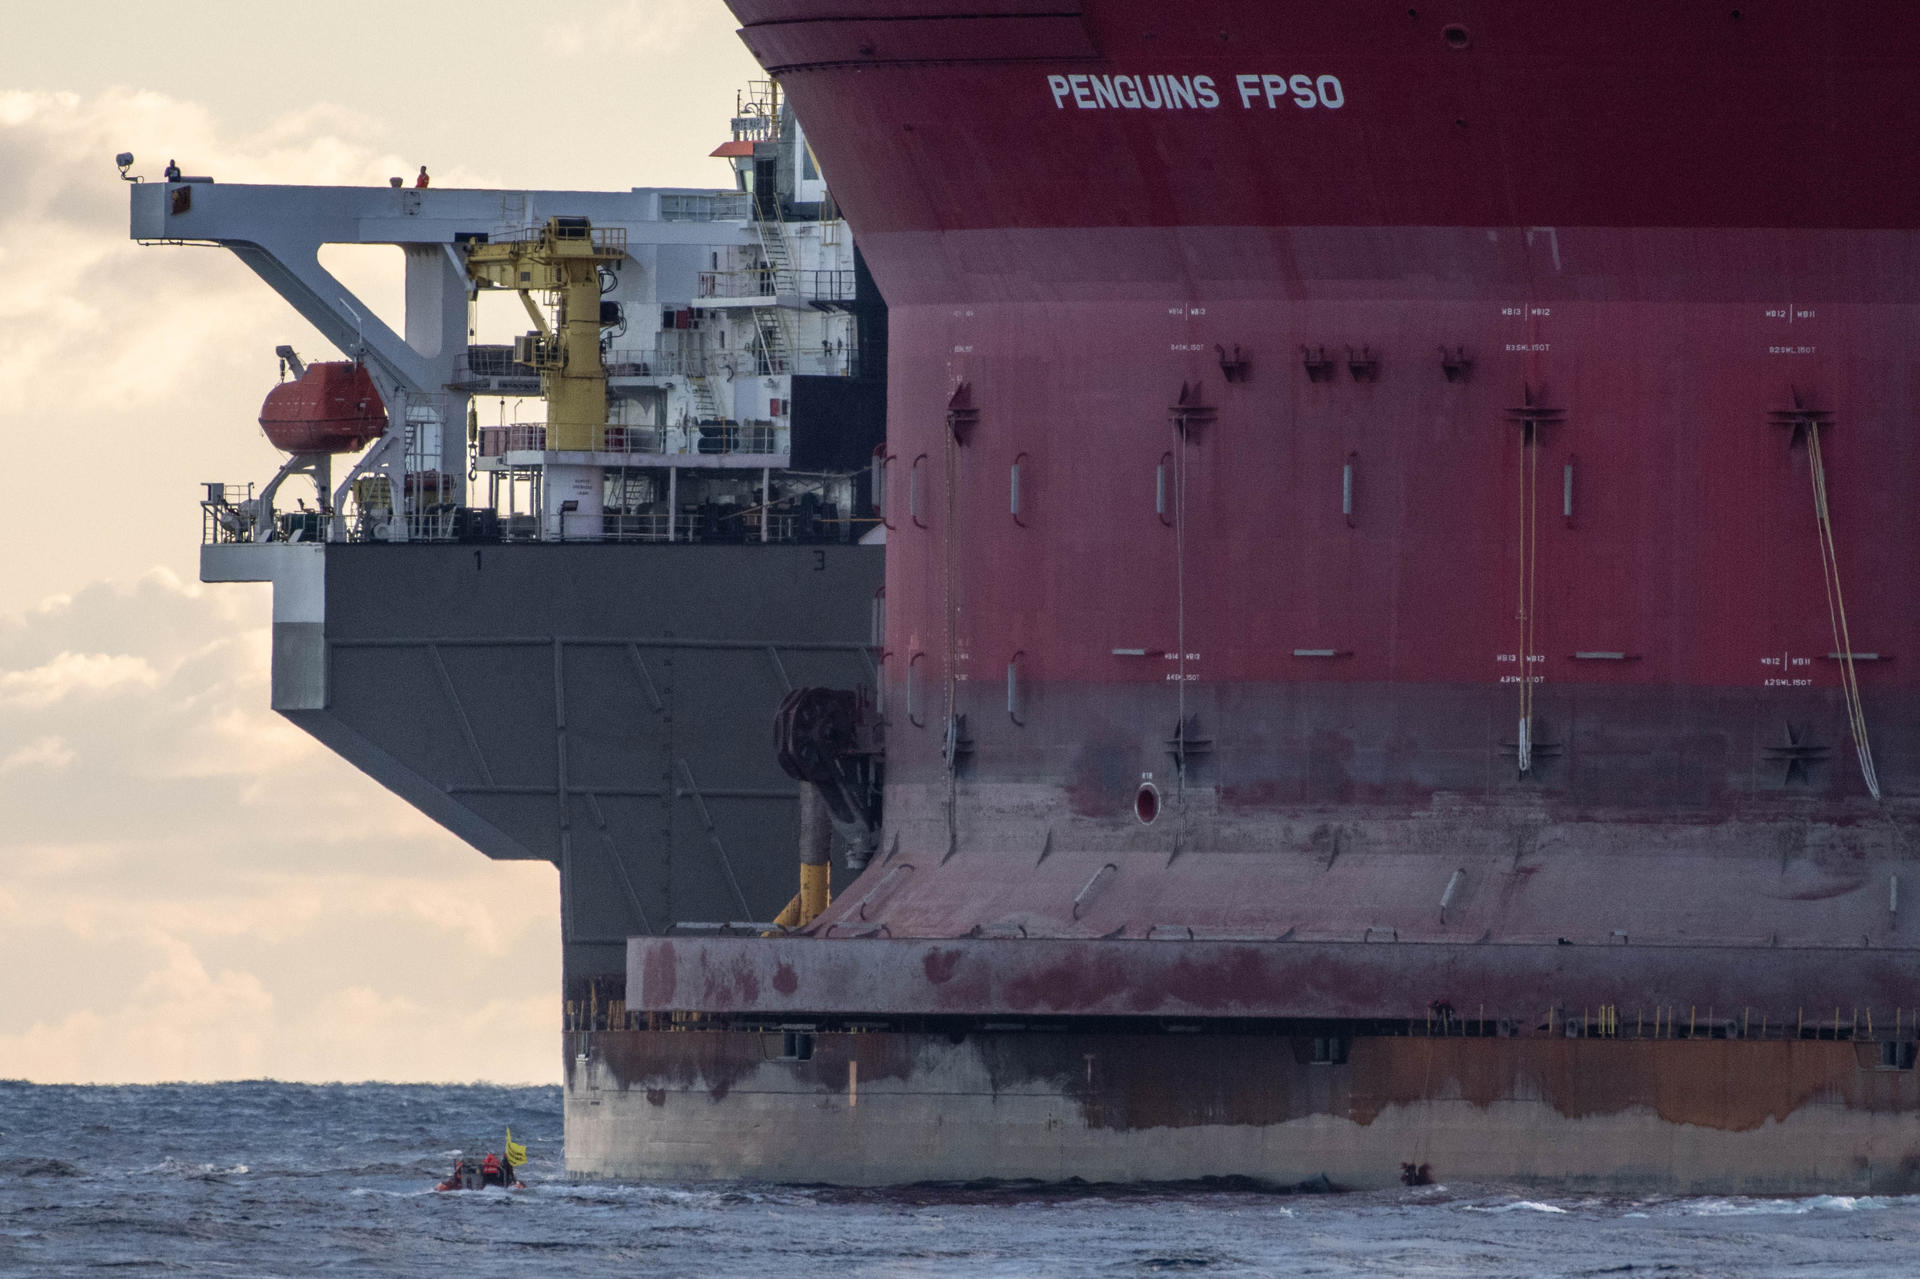 GRAFCAN5001. LAS PALMAS DE GRAN CANARIA (ESPAÑA), 31/01/2023.- Cuatro activistas de Greenpeace se han subido este martes a un barco que transporta una plataforma petrolífera de Shell en aguas al norte de Canarias para protestar por la perforación de gas y petróleo en el Mar del Norte, que es el destino de este buque. EFE/Chris J. Ratcliffe (Greenpeace) SÓLO USO EDITORIAL/SÓLO DISPONIBLE PARA ILUSTRAR LA NOTICIA QUE ACOMPAÑA (CRÉDITO OBLIGATORIO)